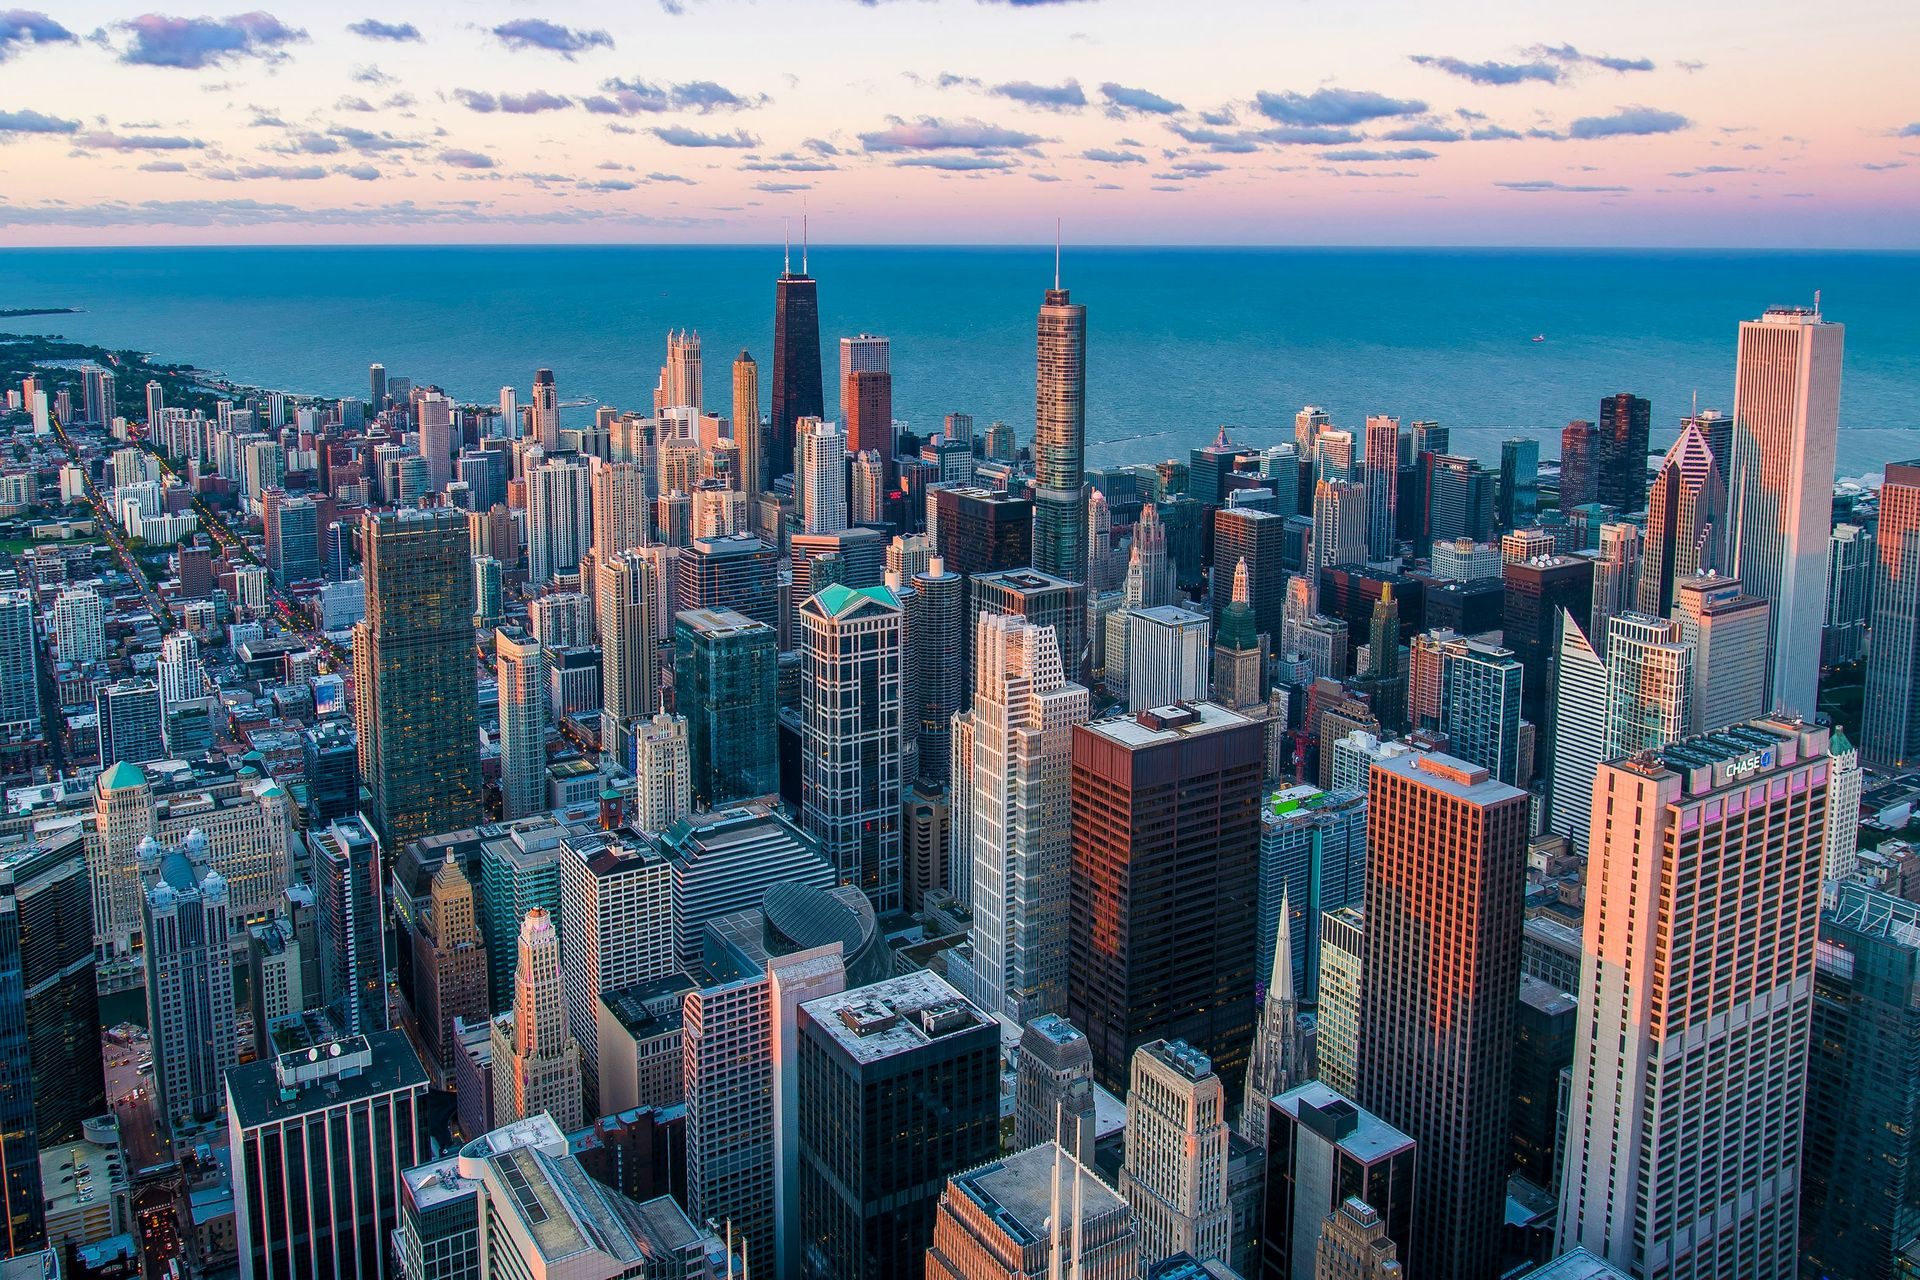 7# Chicago (160,100 millionaires)